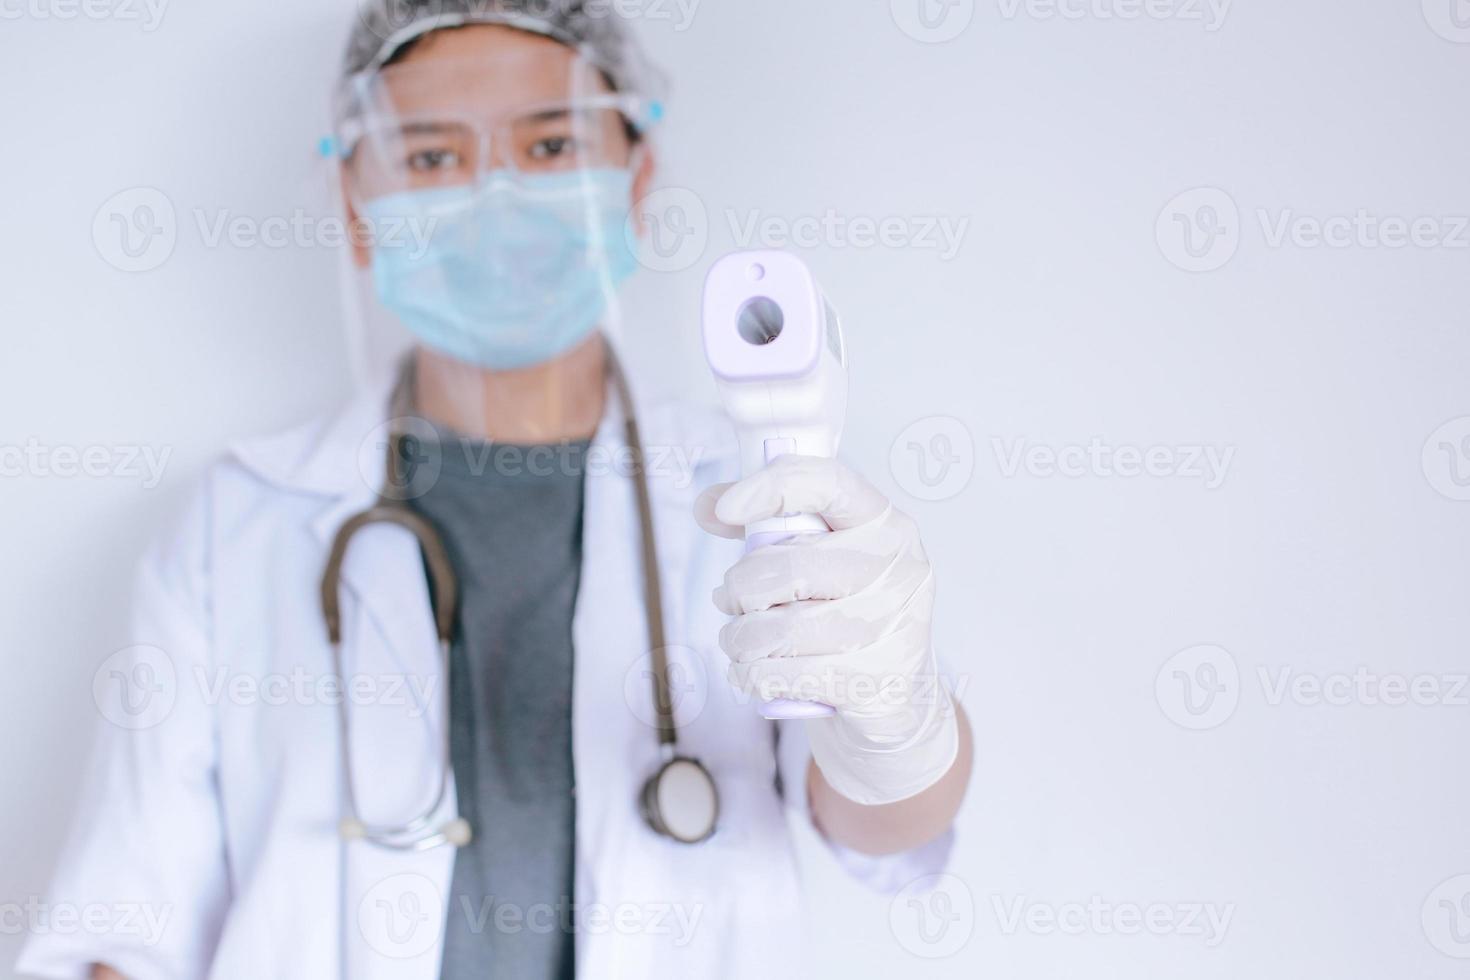 Nahaufnahme eines Arztes mit Schutzmaske, der bereit ist, ein Infrarot-Stirnthermometer oder eine Thermometerpistole zu verwenden, um die Körpertemperatur auf Virussymptome und epidemischen Virusausbruch zu überprüfen foto